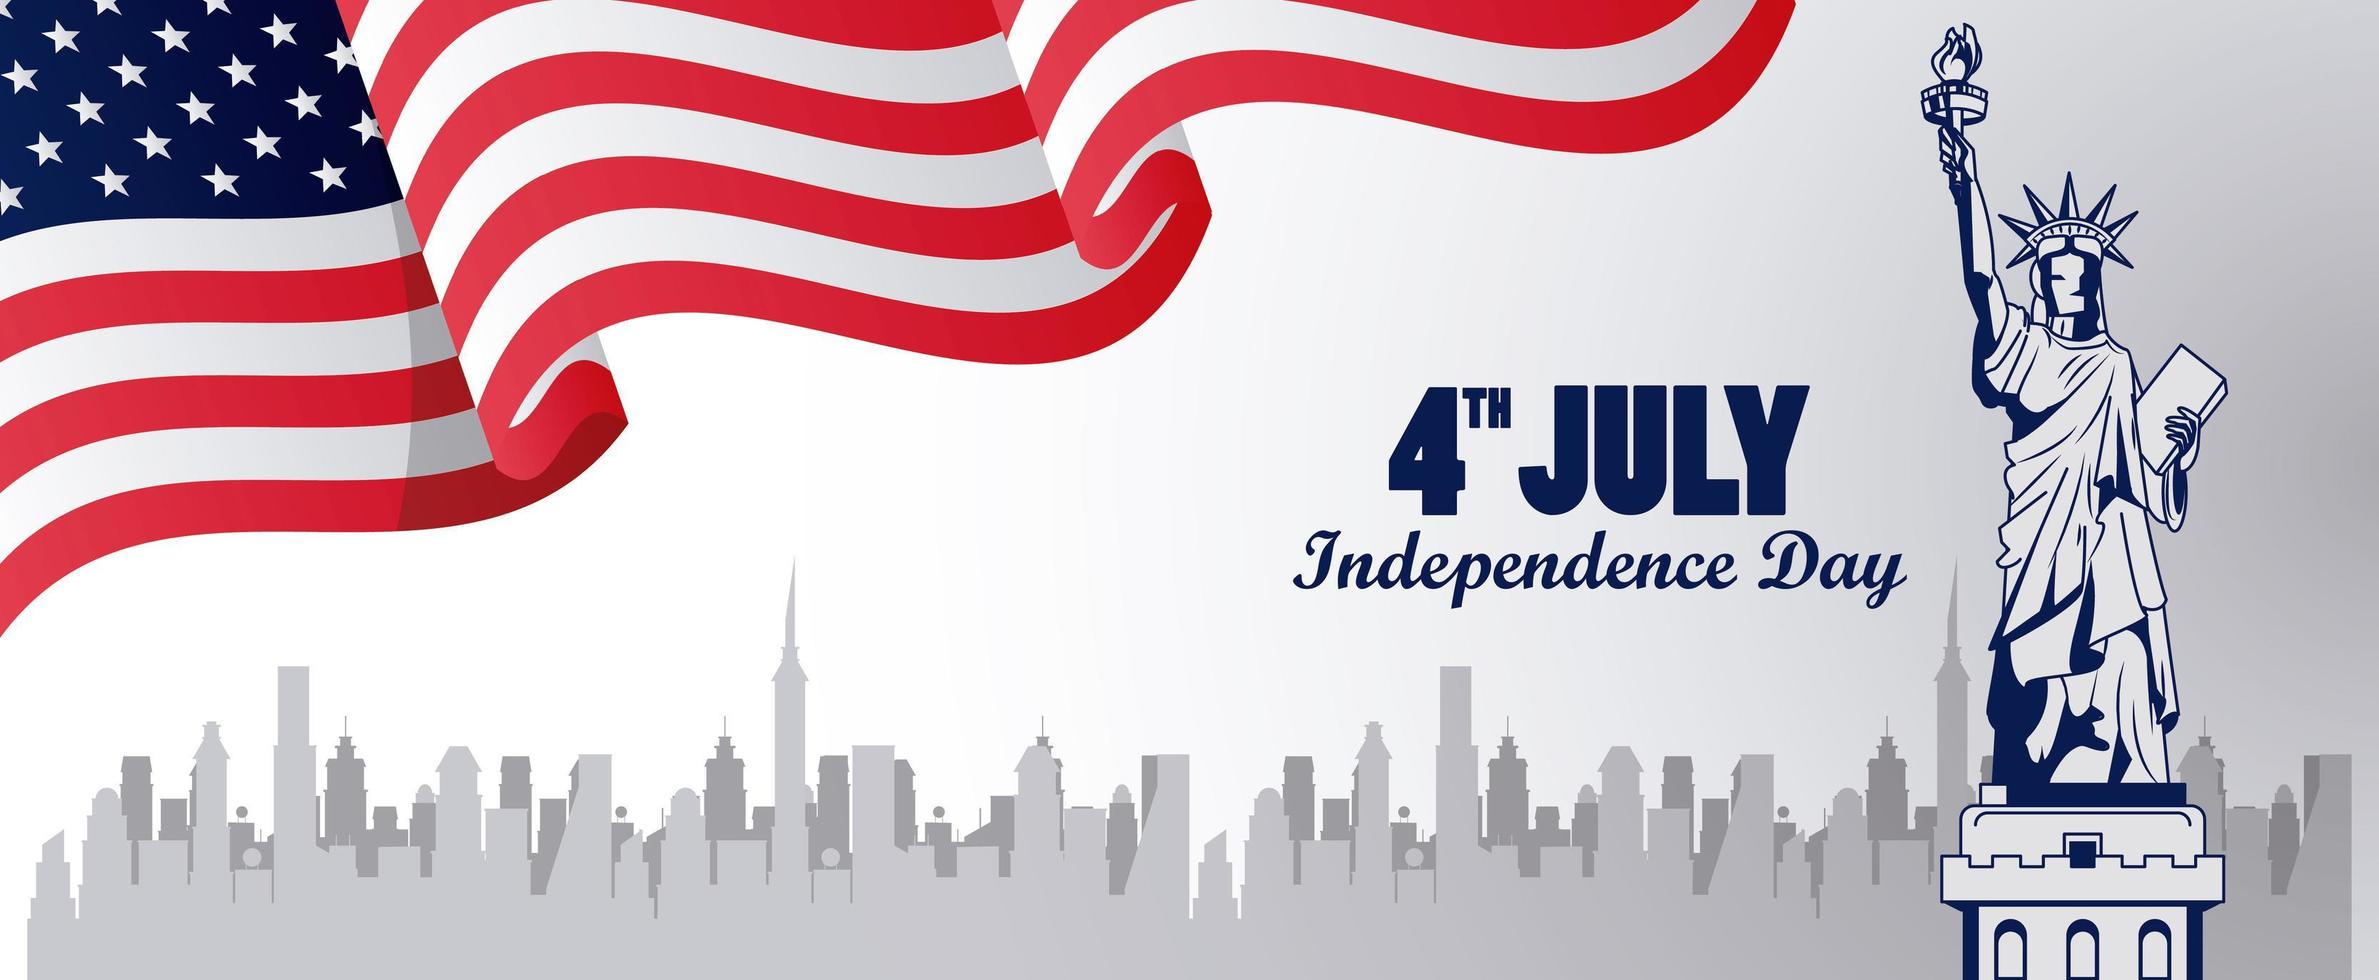 quatrième juillet célébration de la fête de l'indépendance des états-unis avec drapeau et statue de la liberté vecteur